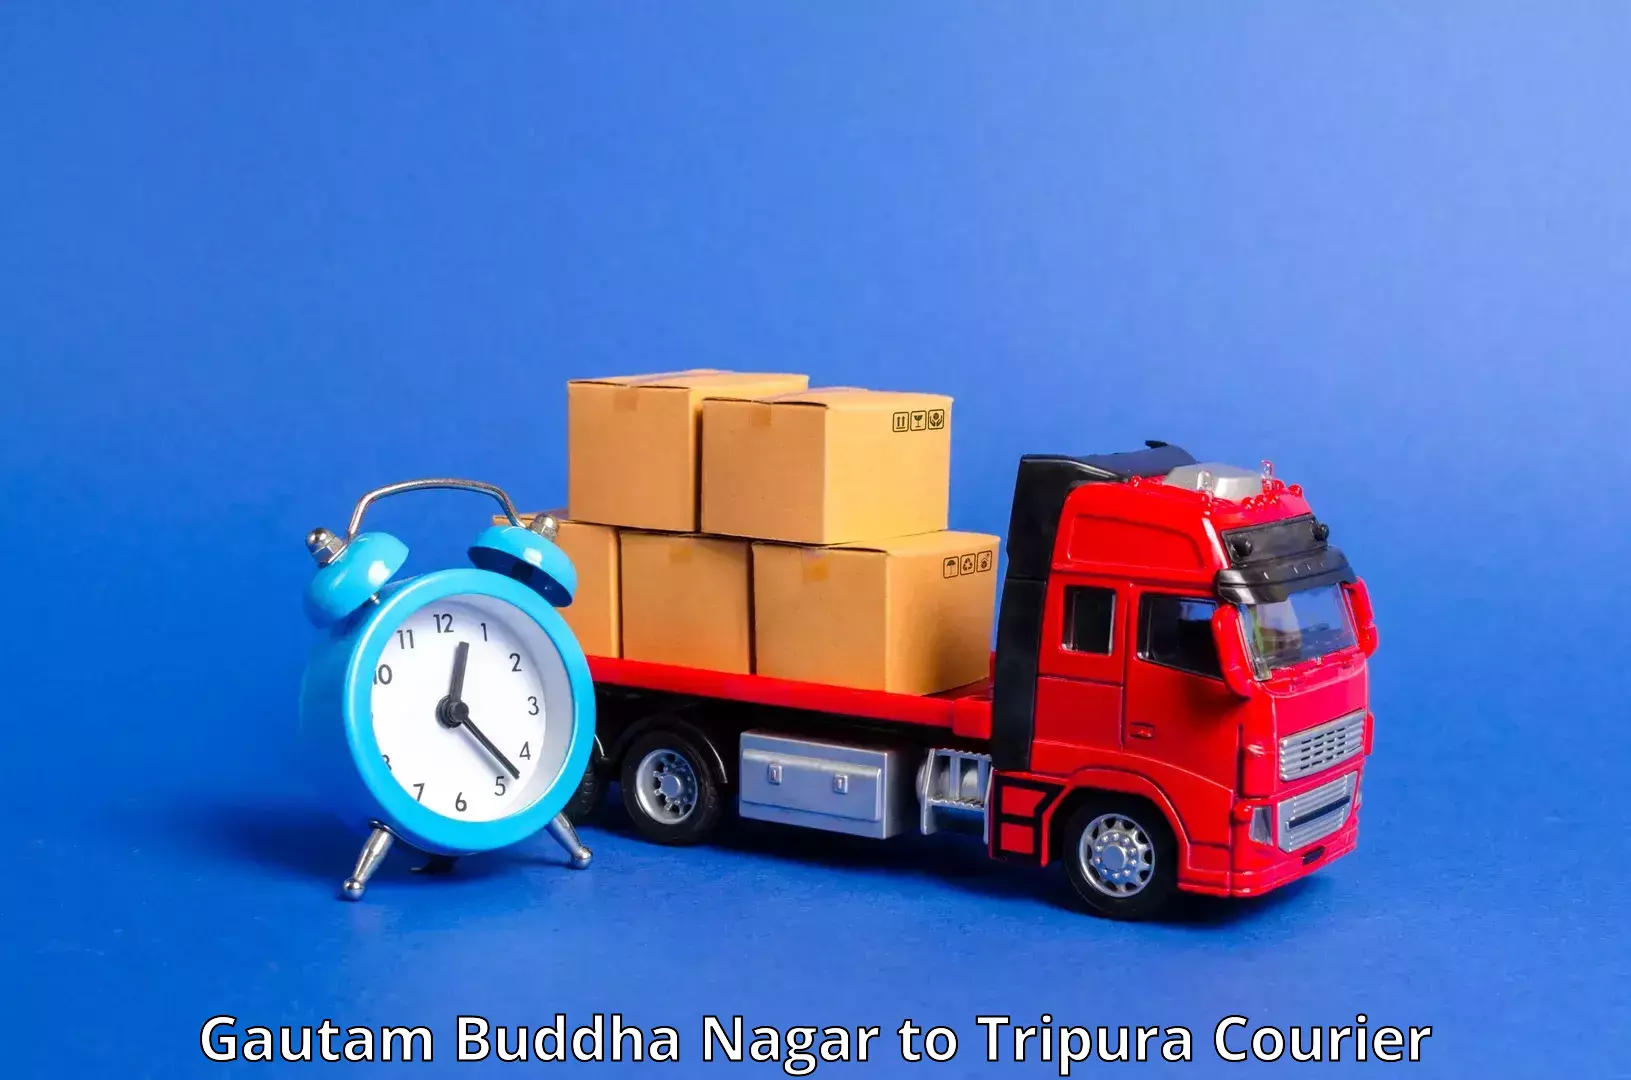 Courier dispatch services in Gautam Buddha Nagar to West Tripura